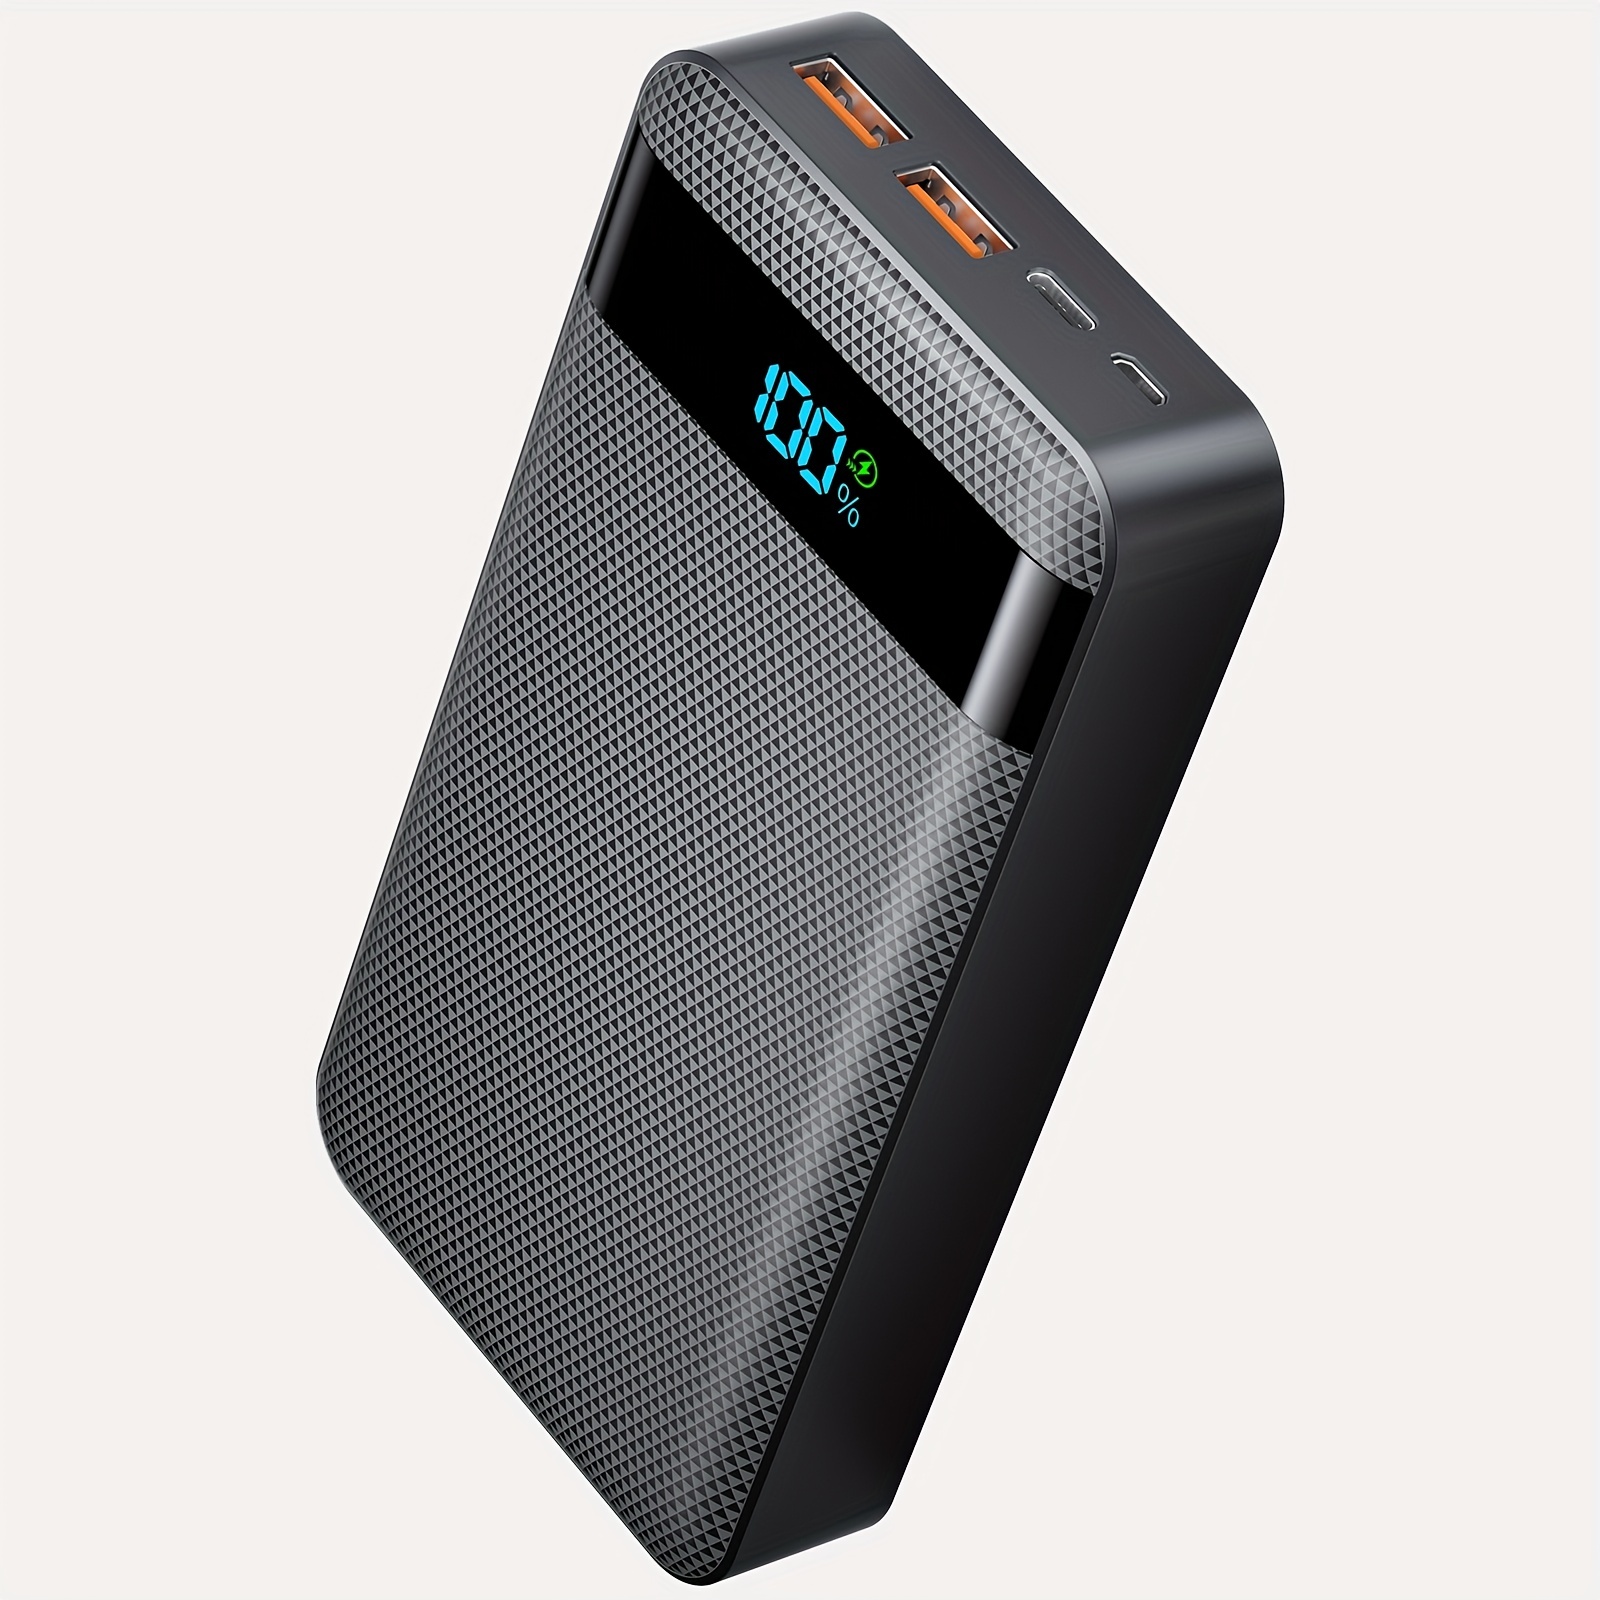  Power Bank 10000mAh, cargador portátil de carga ultracompacto  de alta velocidad, batería externa más pequeña y ligera, compatible con  iPhone 12 11 X Samsung S10, Google, LG, iPad y más, color